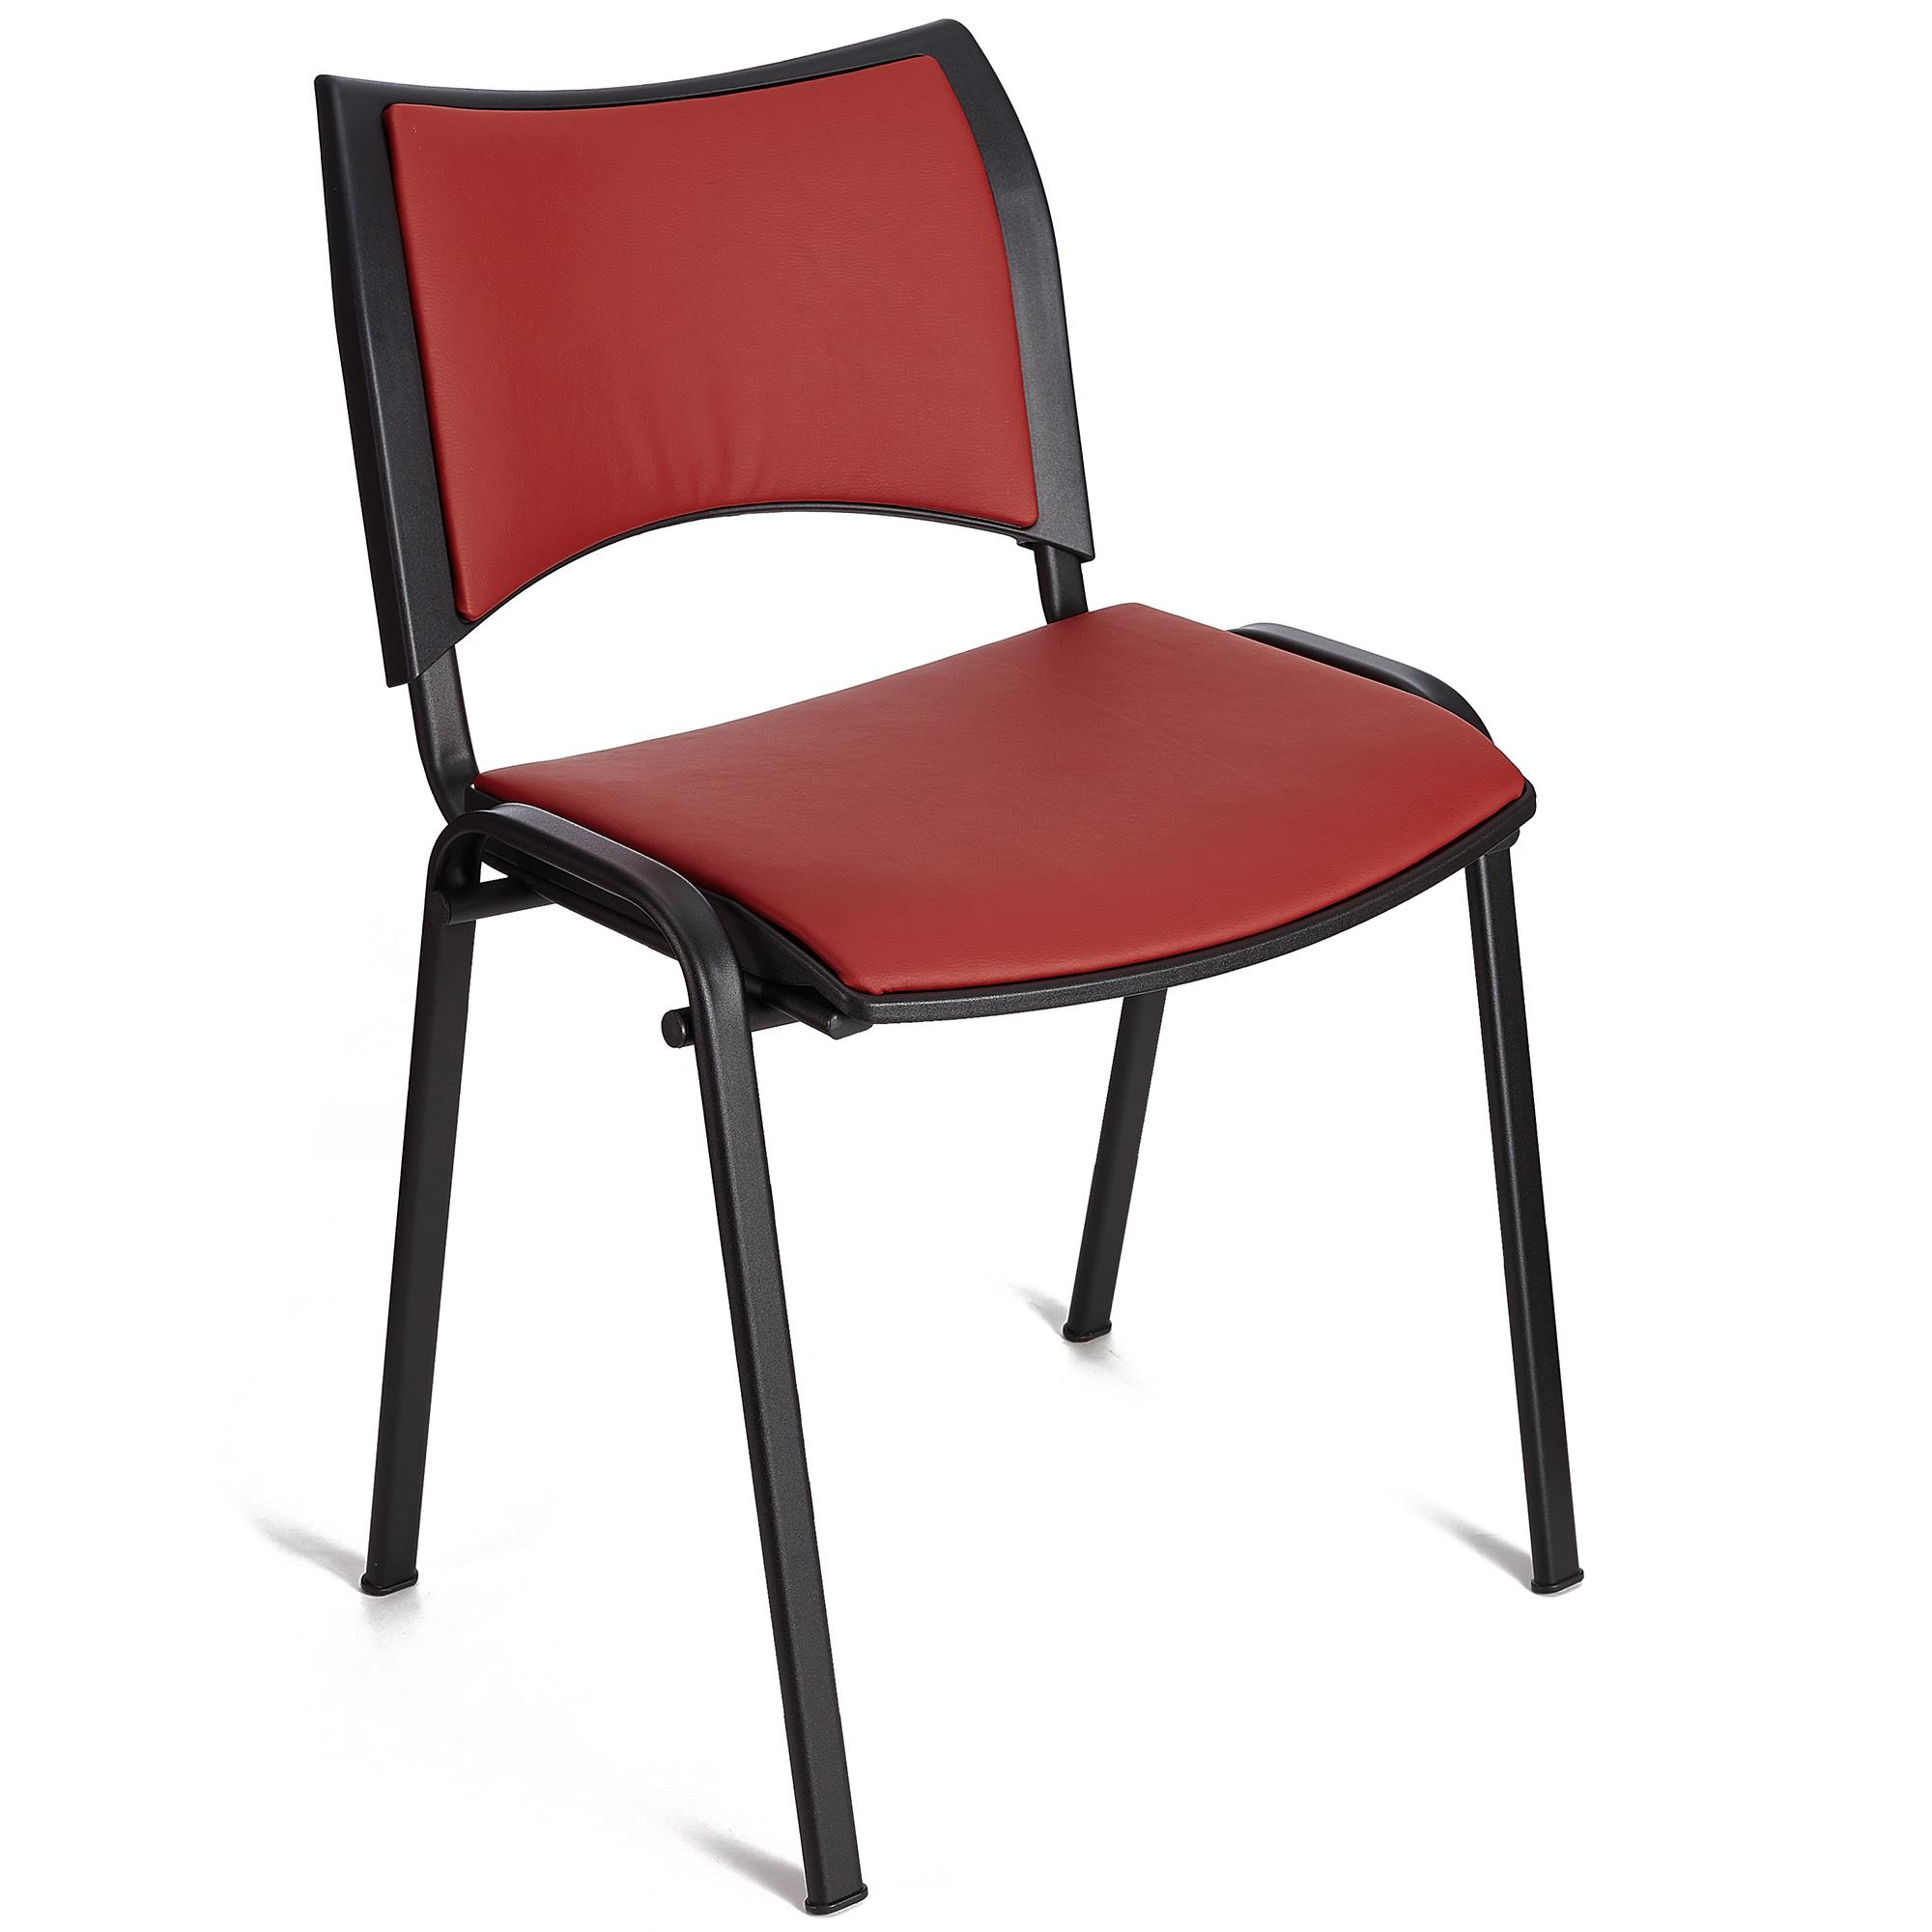 Cadeira de Visita ROMEL PELE, Prática e Empilhável, Pernas Pretas, Vermelho